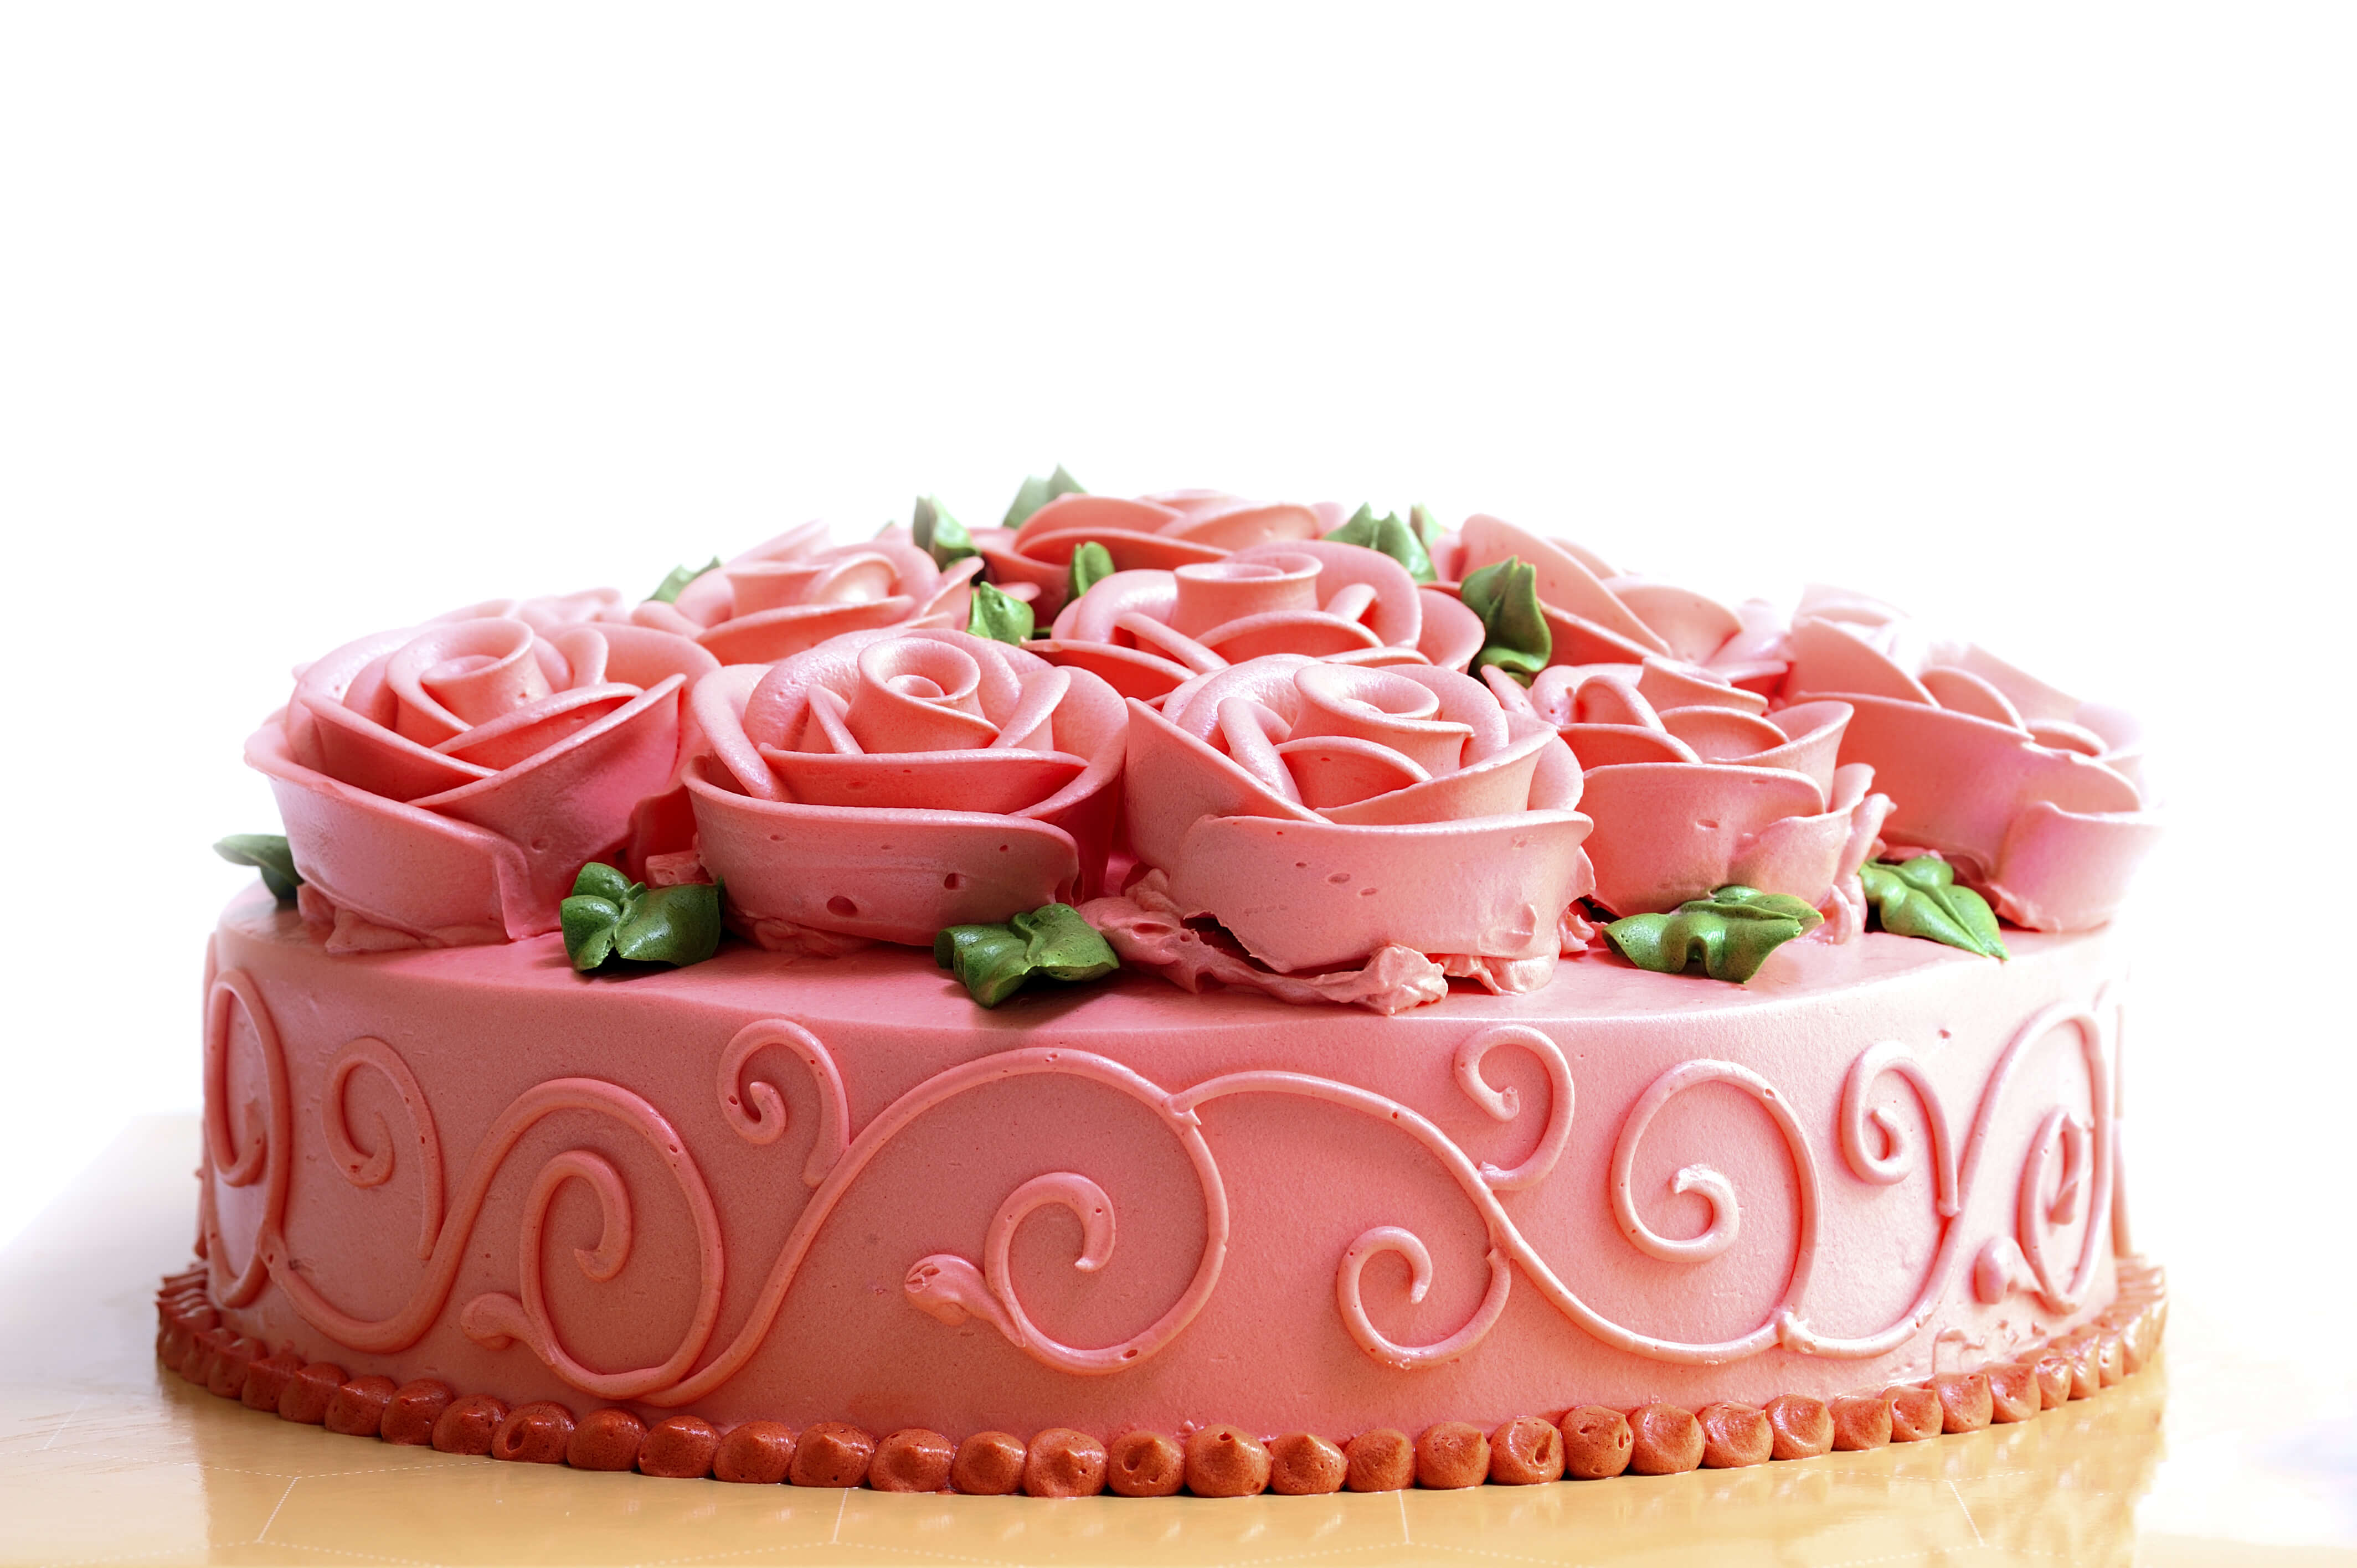 Easy cake decorating ideas for kids - Ocado blog